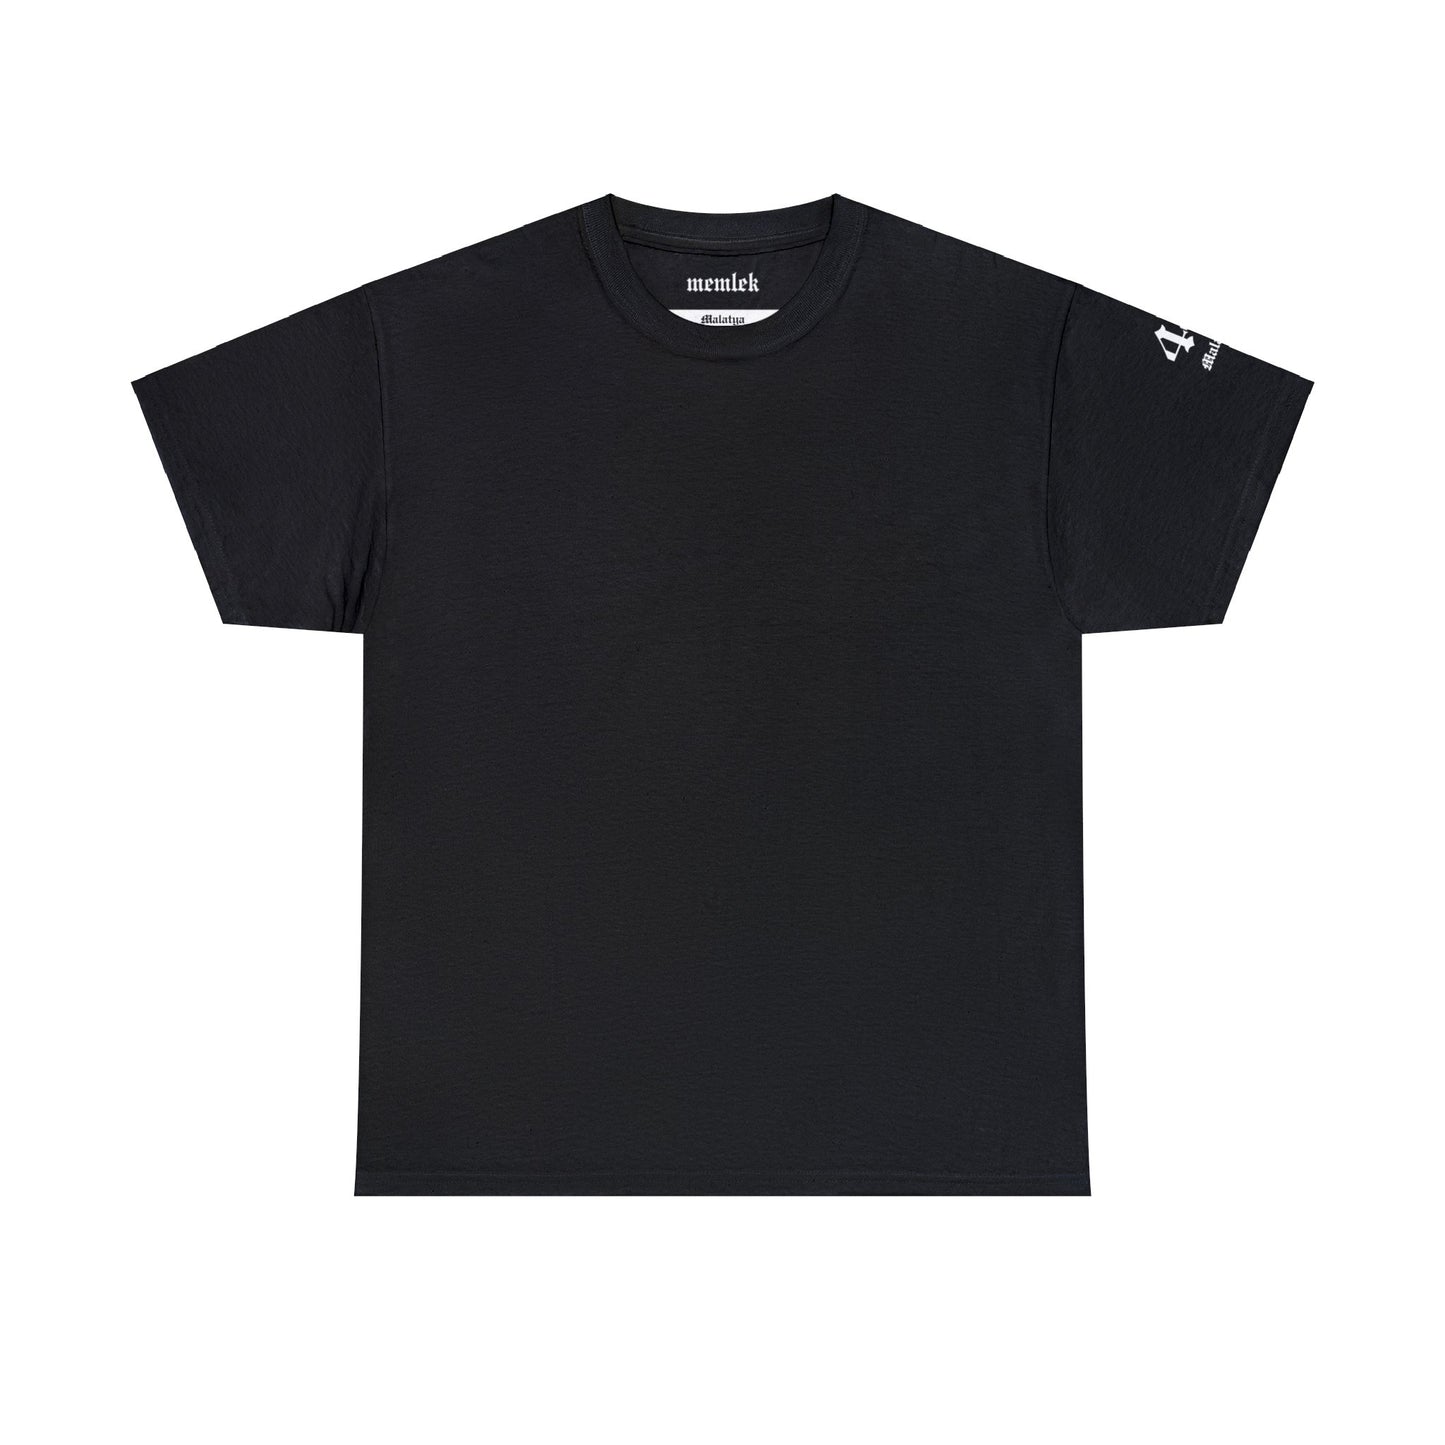 Şehirim - 44 Malatya - T-Shirt - Back Print - Black